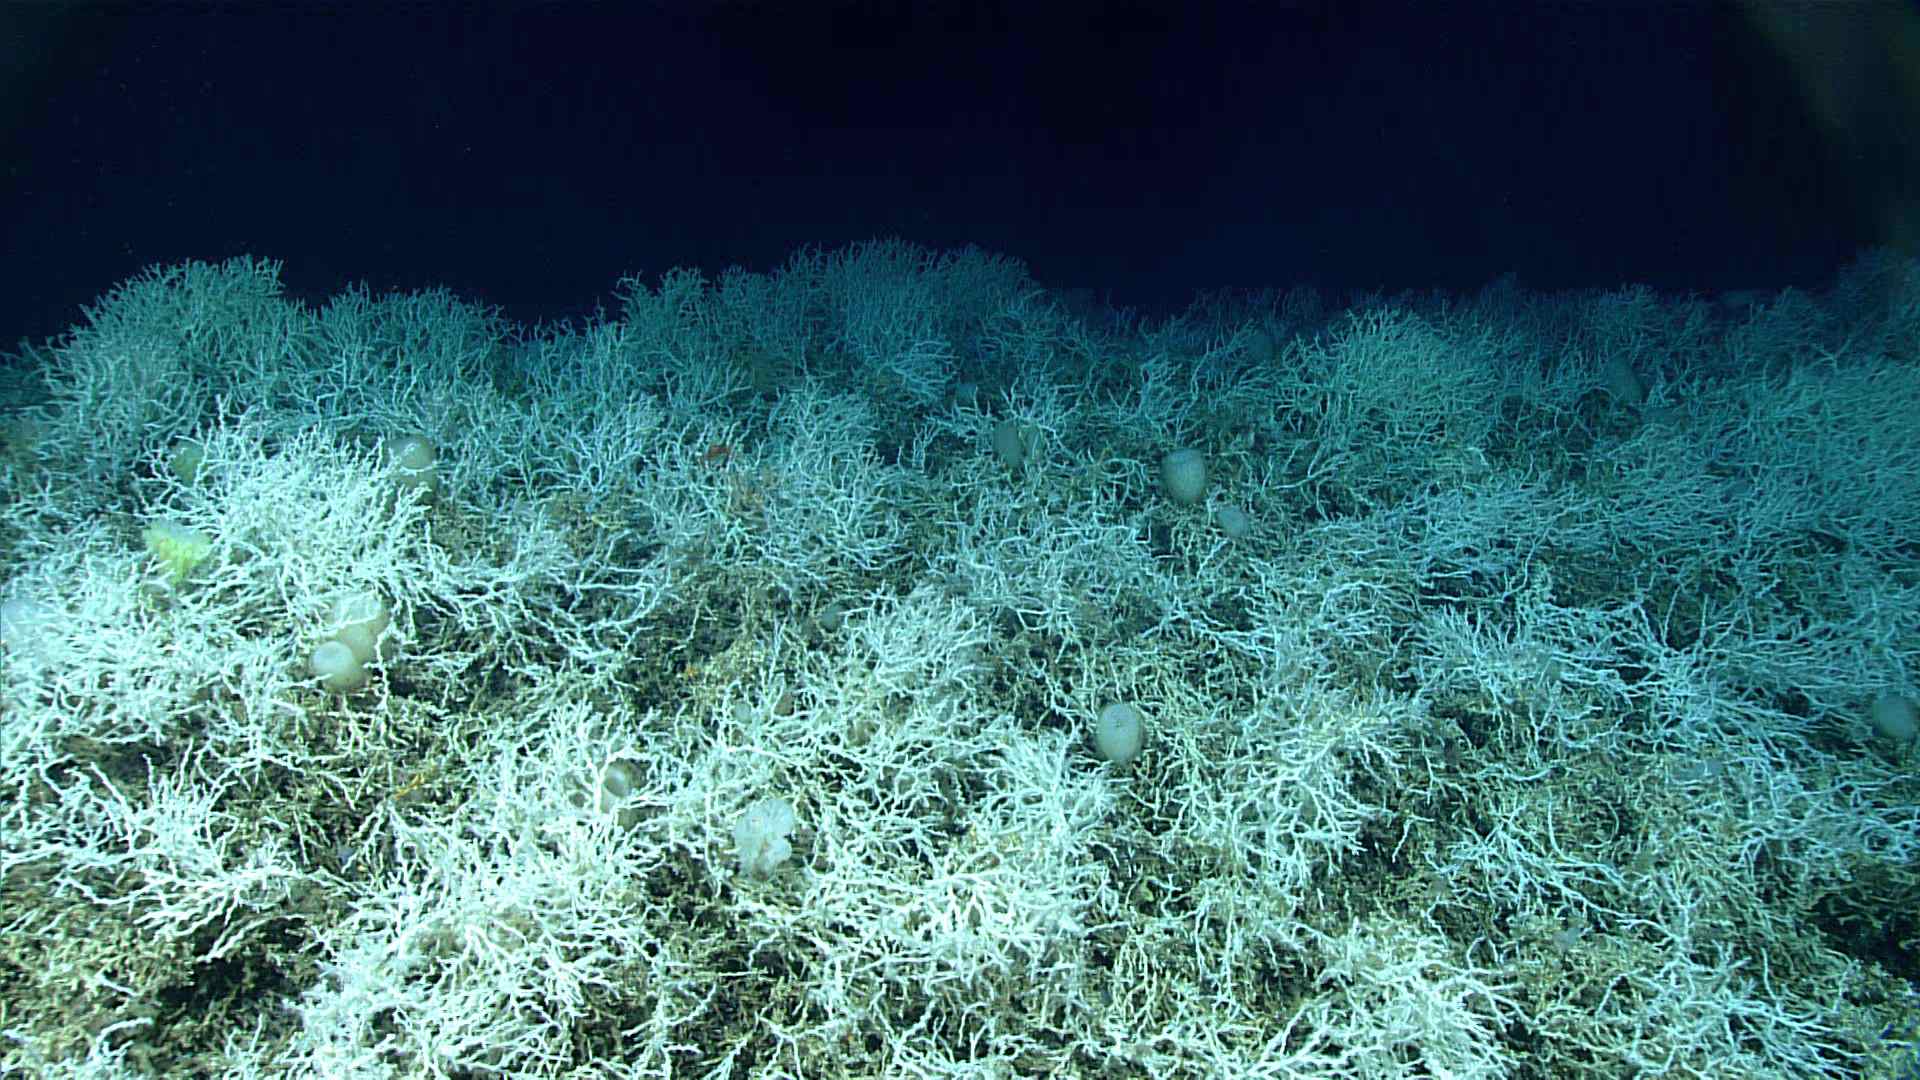 El arrecife de coral profundo es el más grande del mundo conocido